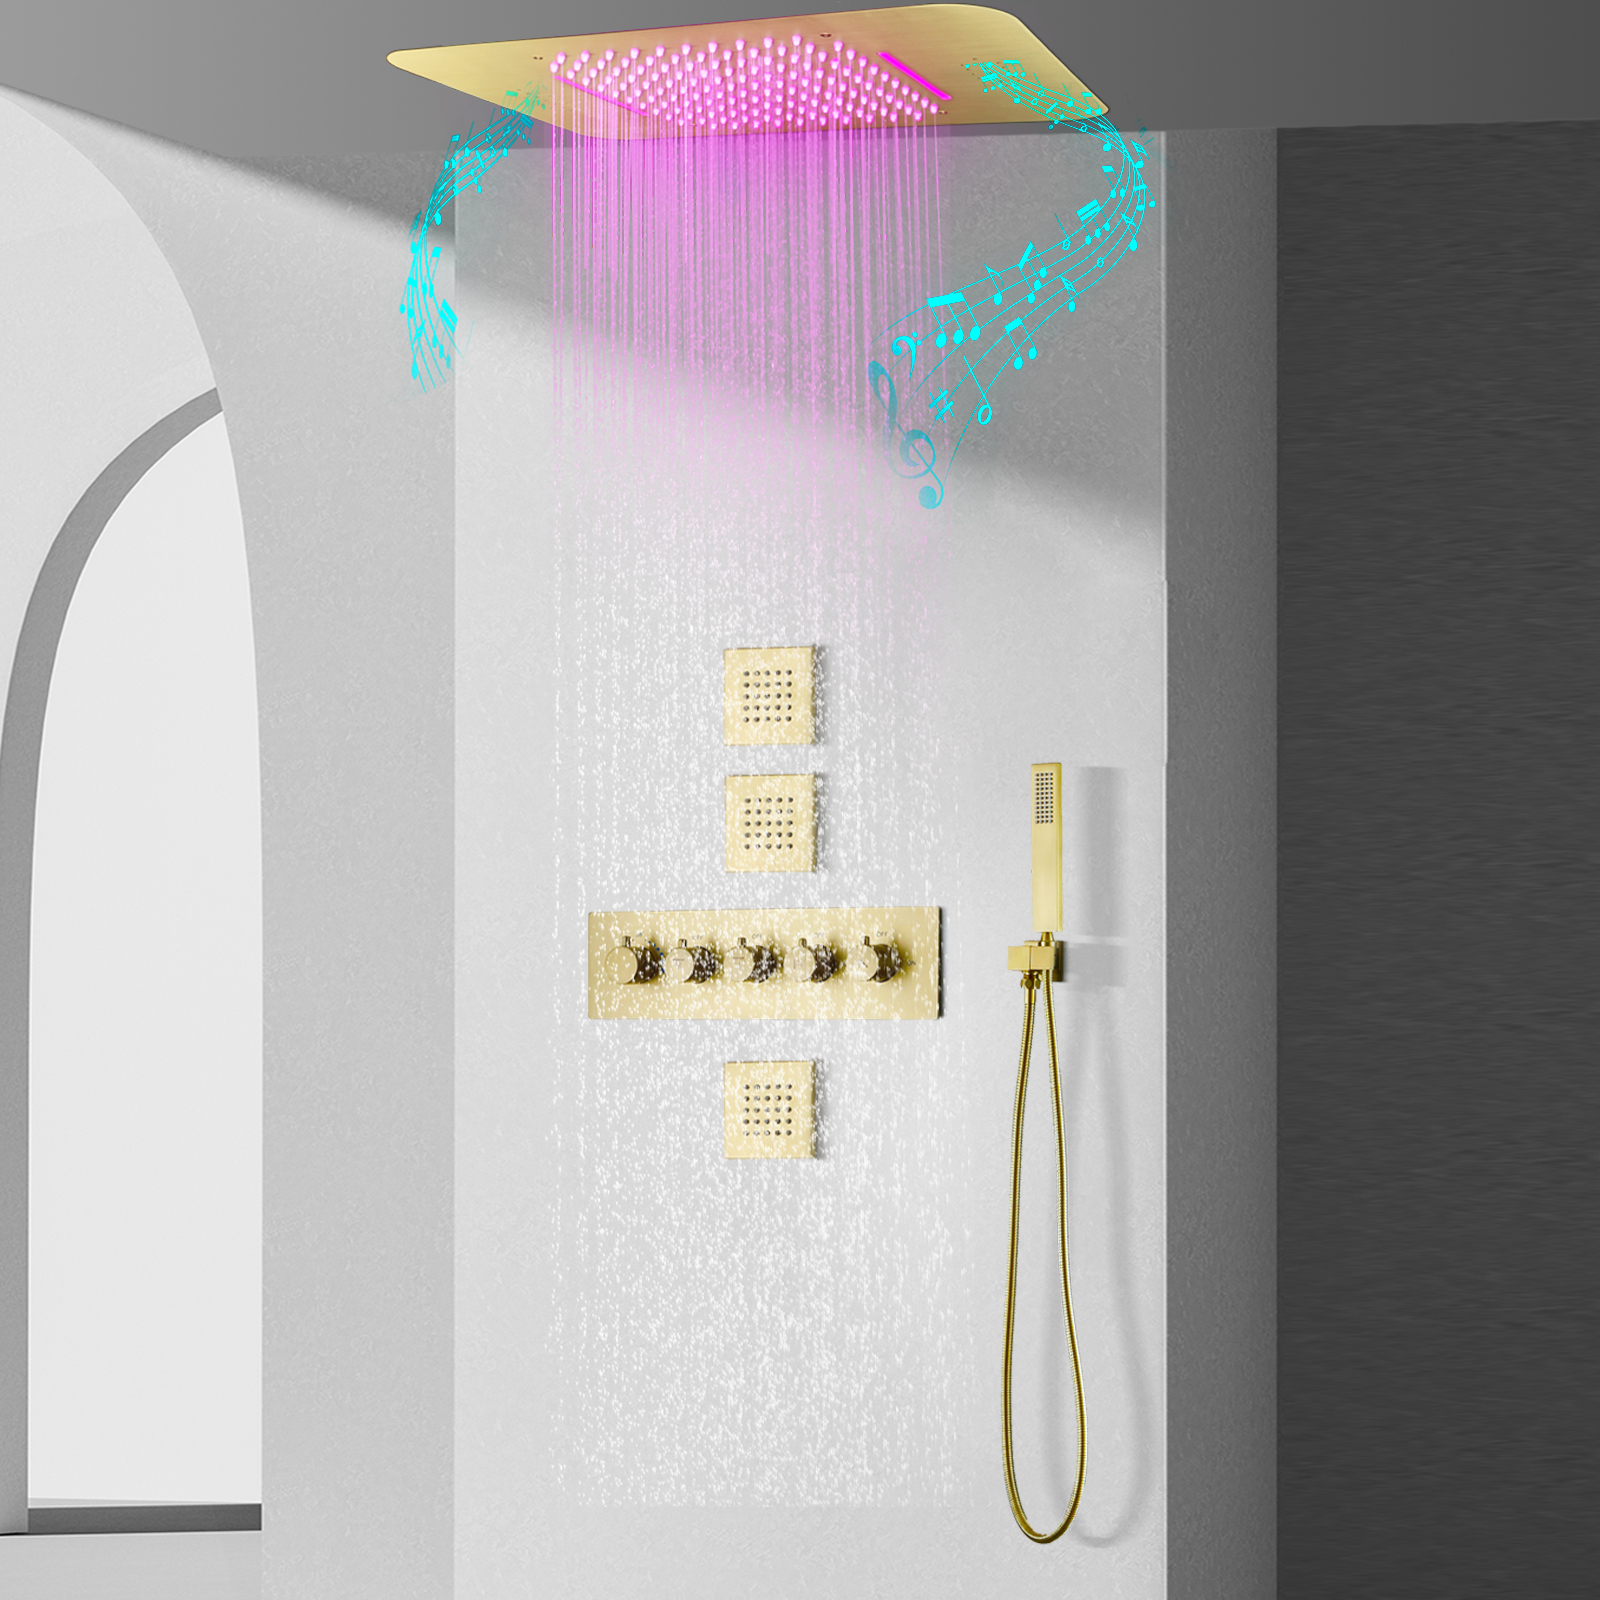 Banheiro escondido chuva chuveiro misturador torneira 23x15ing montagem no teto termostática escovado ouro chuva chuveiro cachoeira sprinkler sho